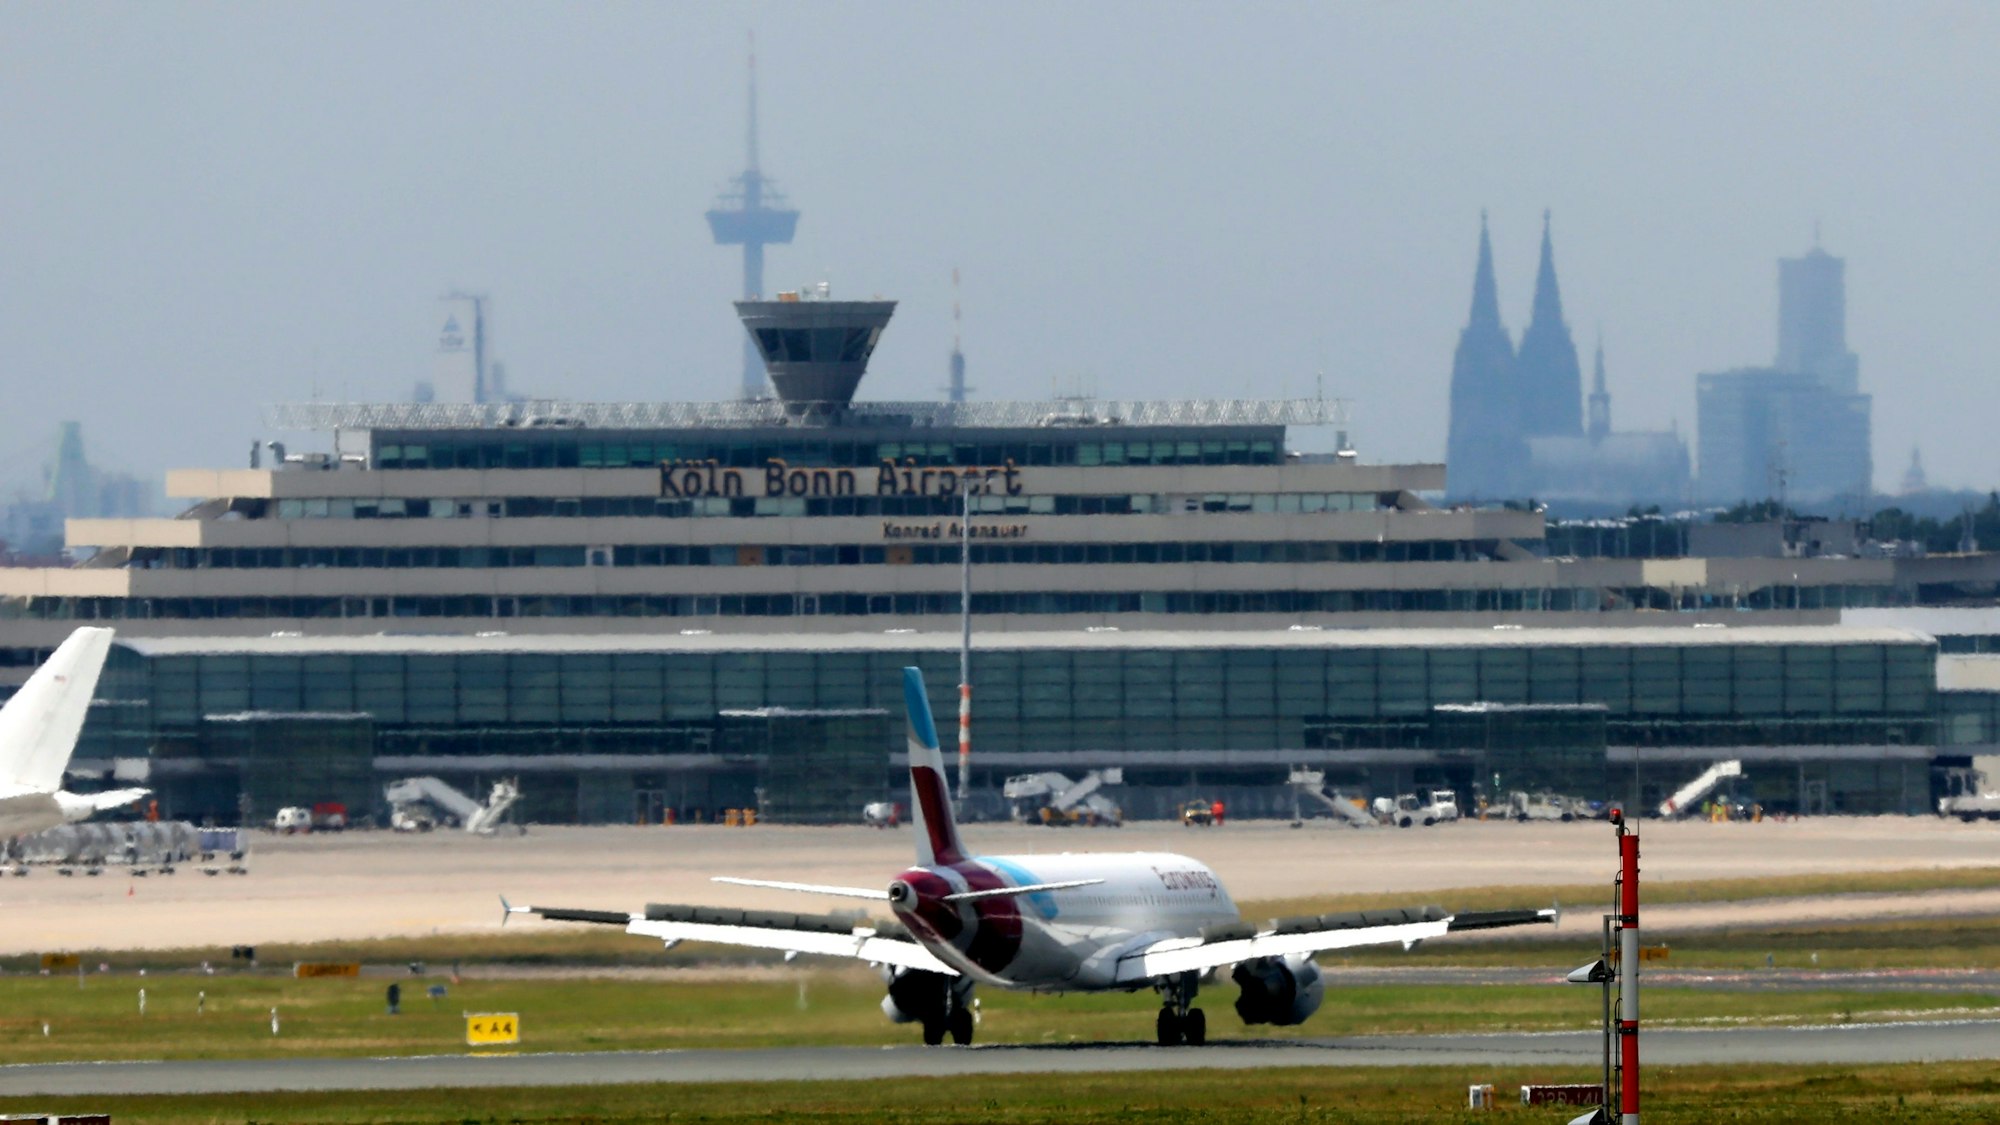 02.07.2021, Köln: Ein Flieger von Eurowings beim Abflug am Köln/Bonner Flughafen. In NRW haben die Sommerferein angefangen.Köln/Bonner Flughafen. Foto: Arton Krasniqi